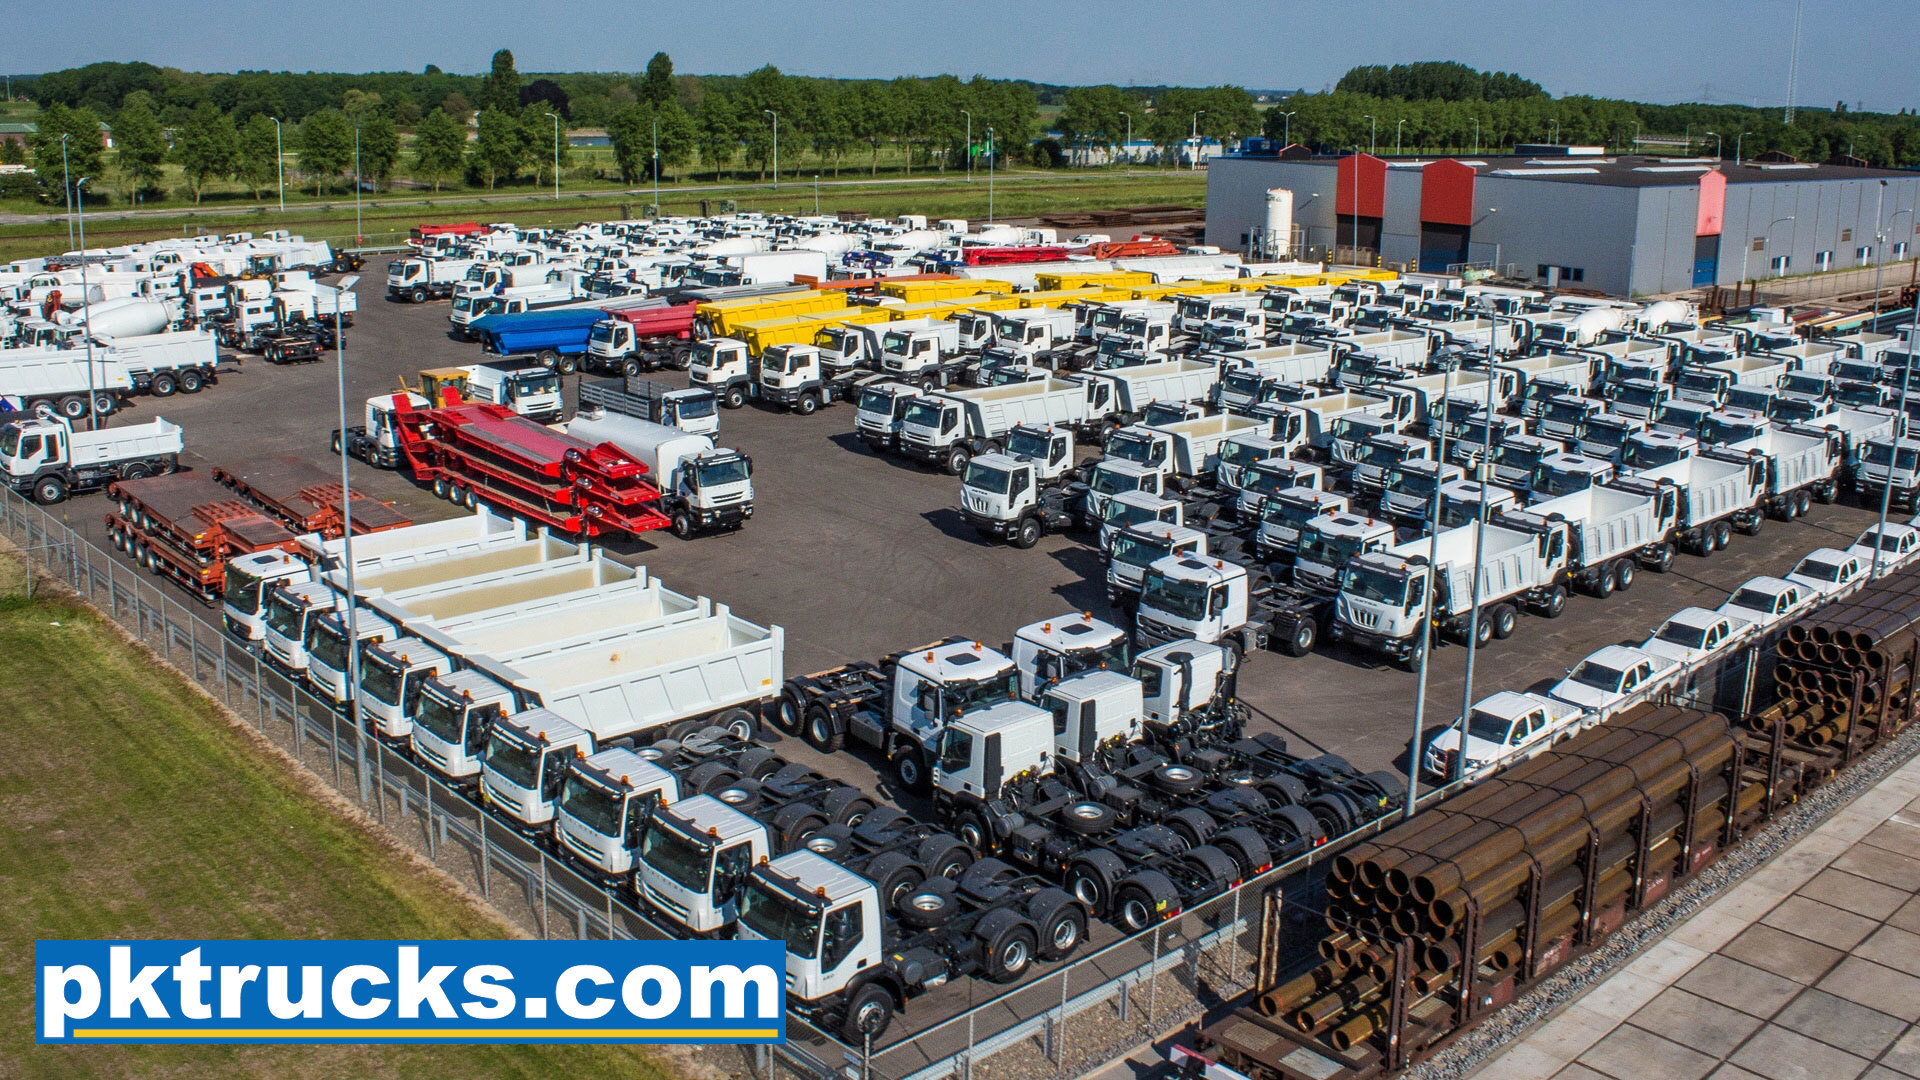 Pk trucks holland undefined: 3 kép.